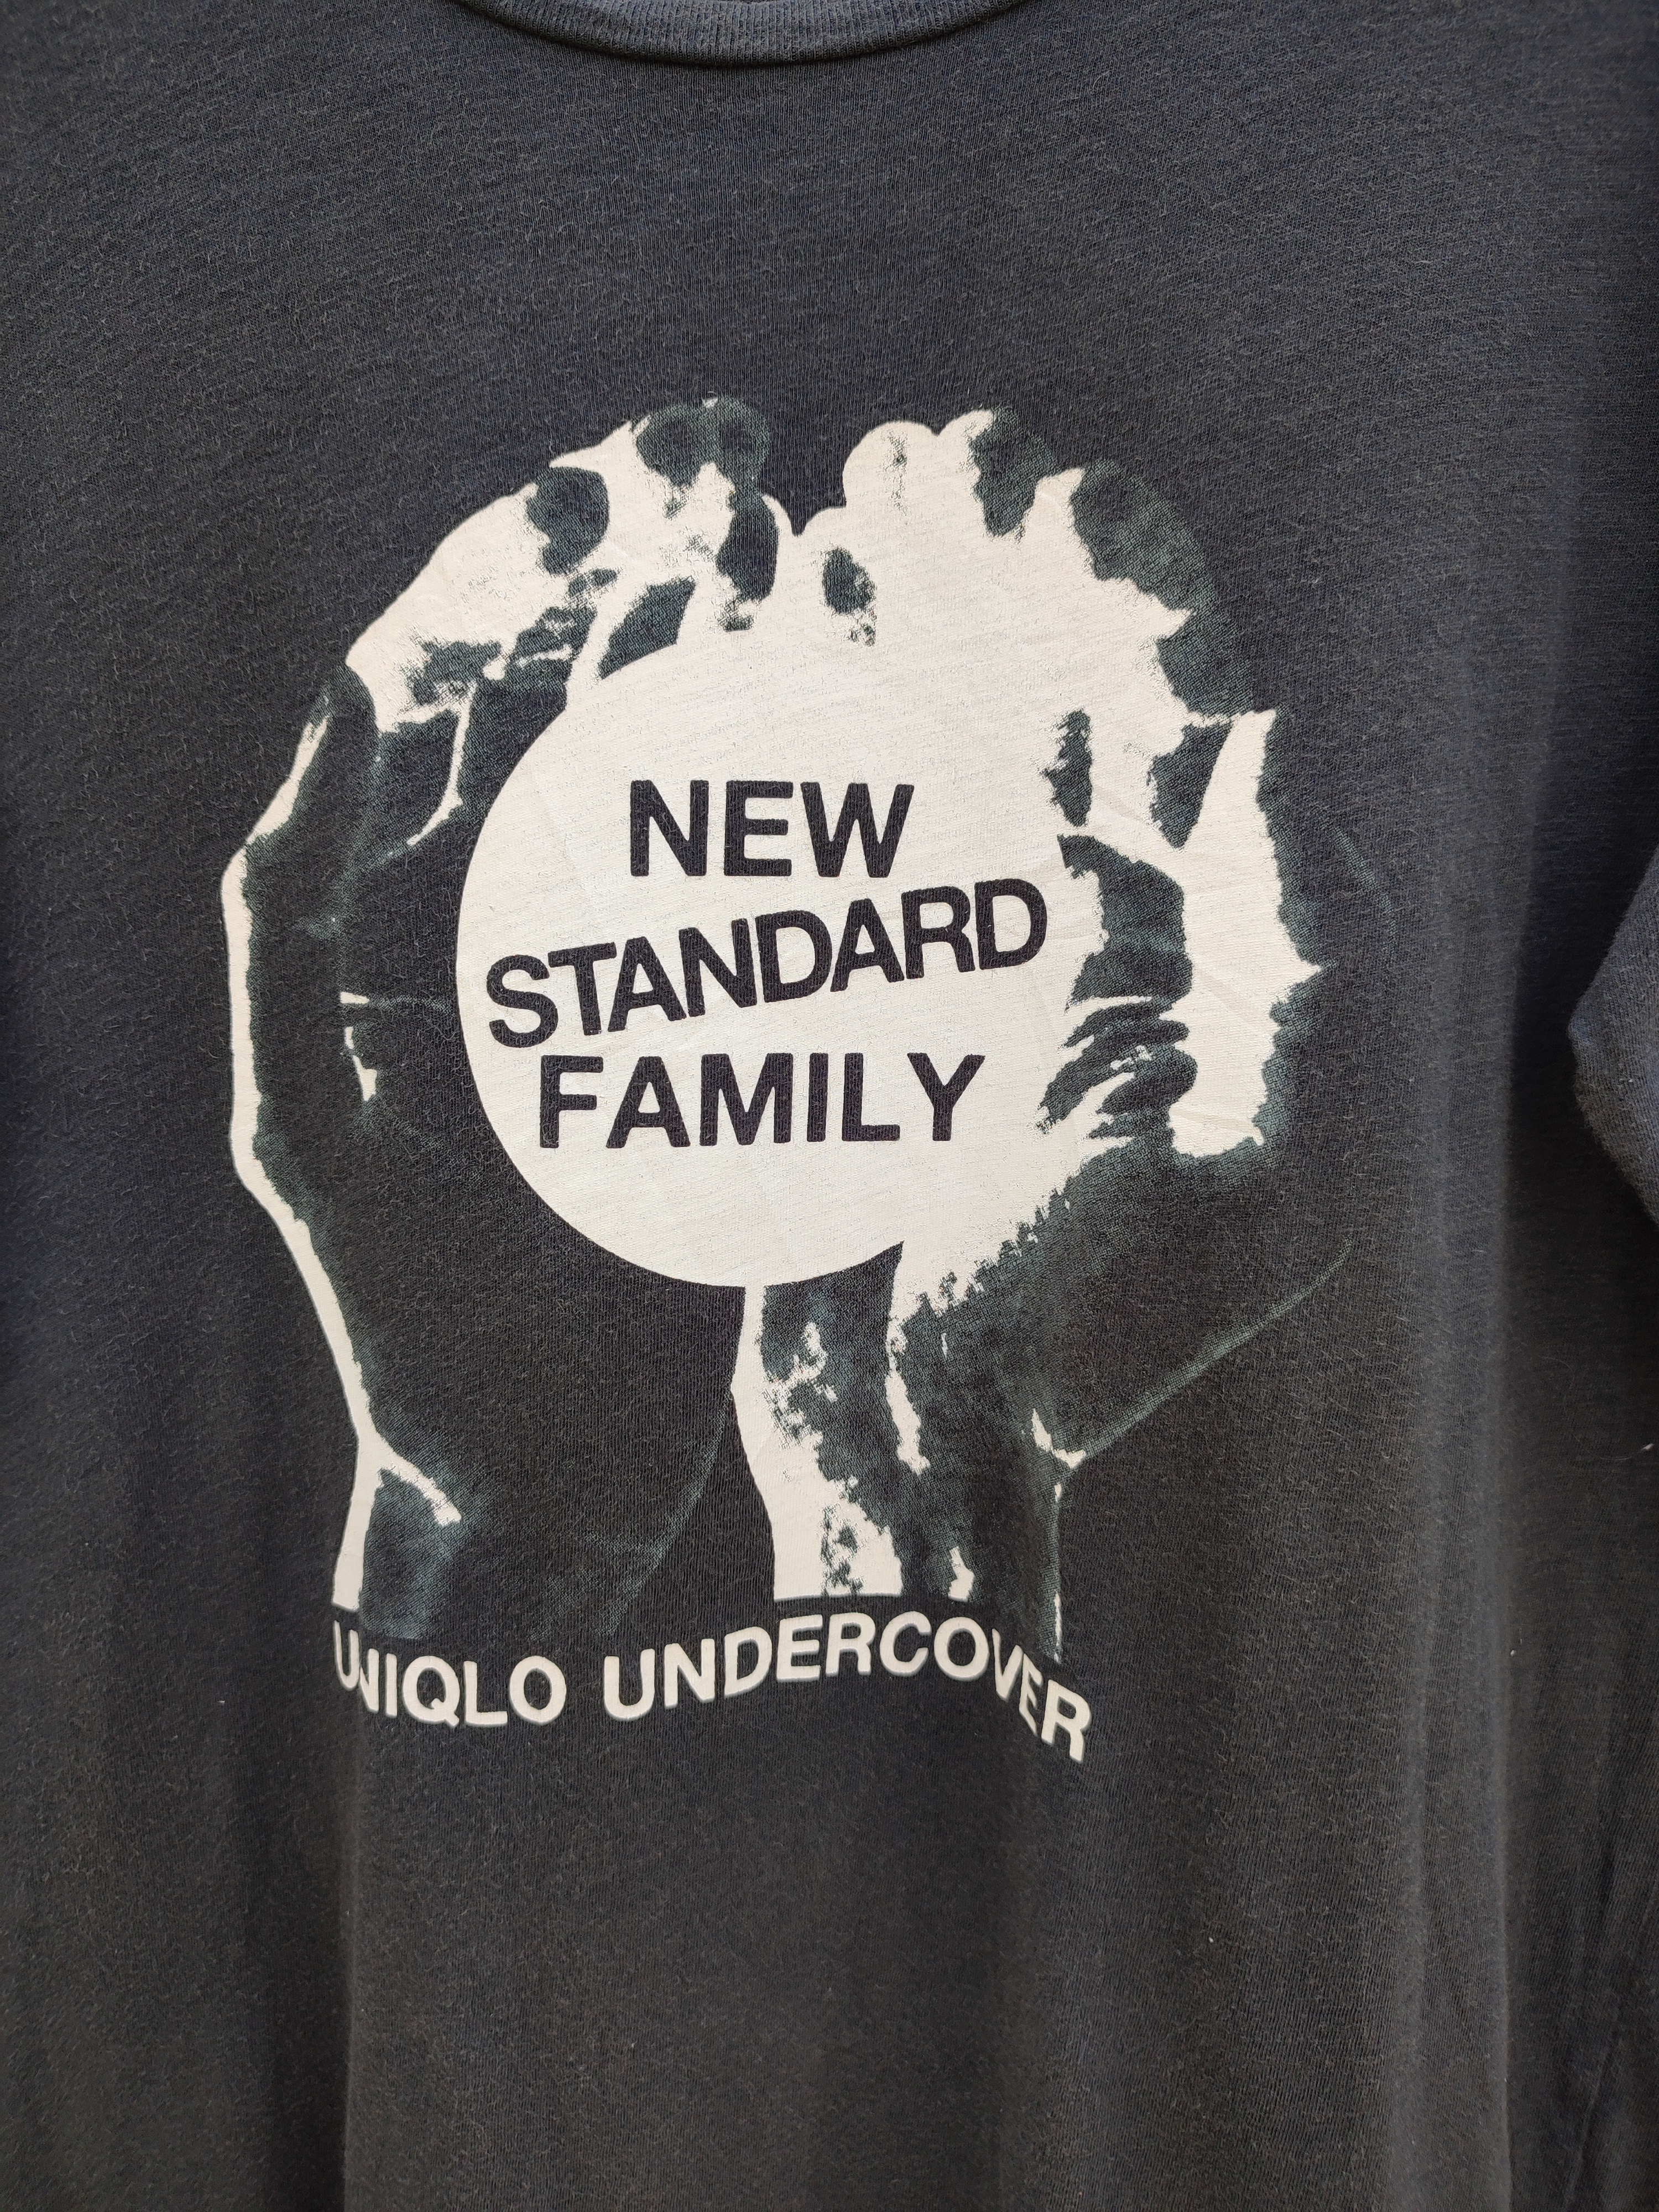 Uniqlo X Undercover New Standard Family Three Quarter Tee - 8